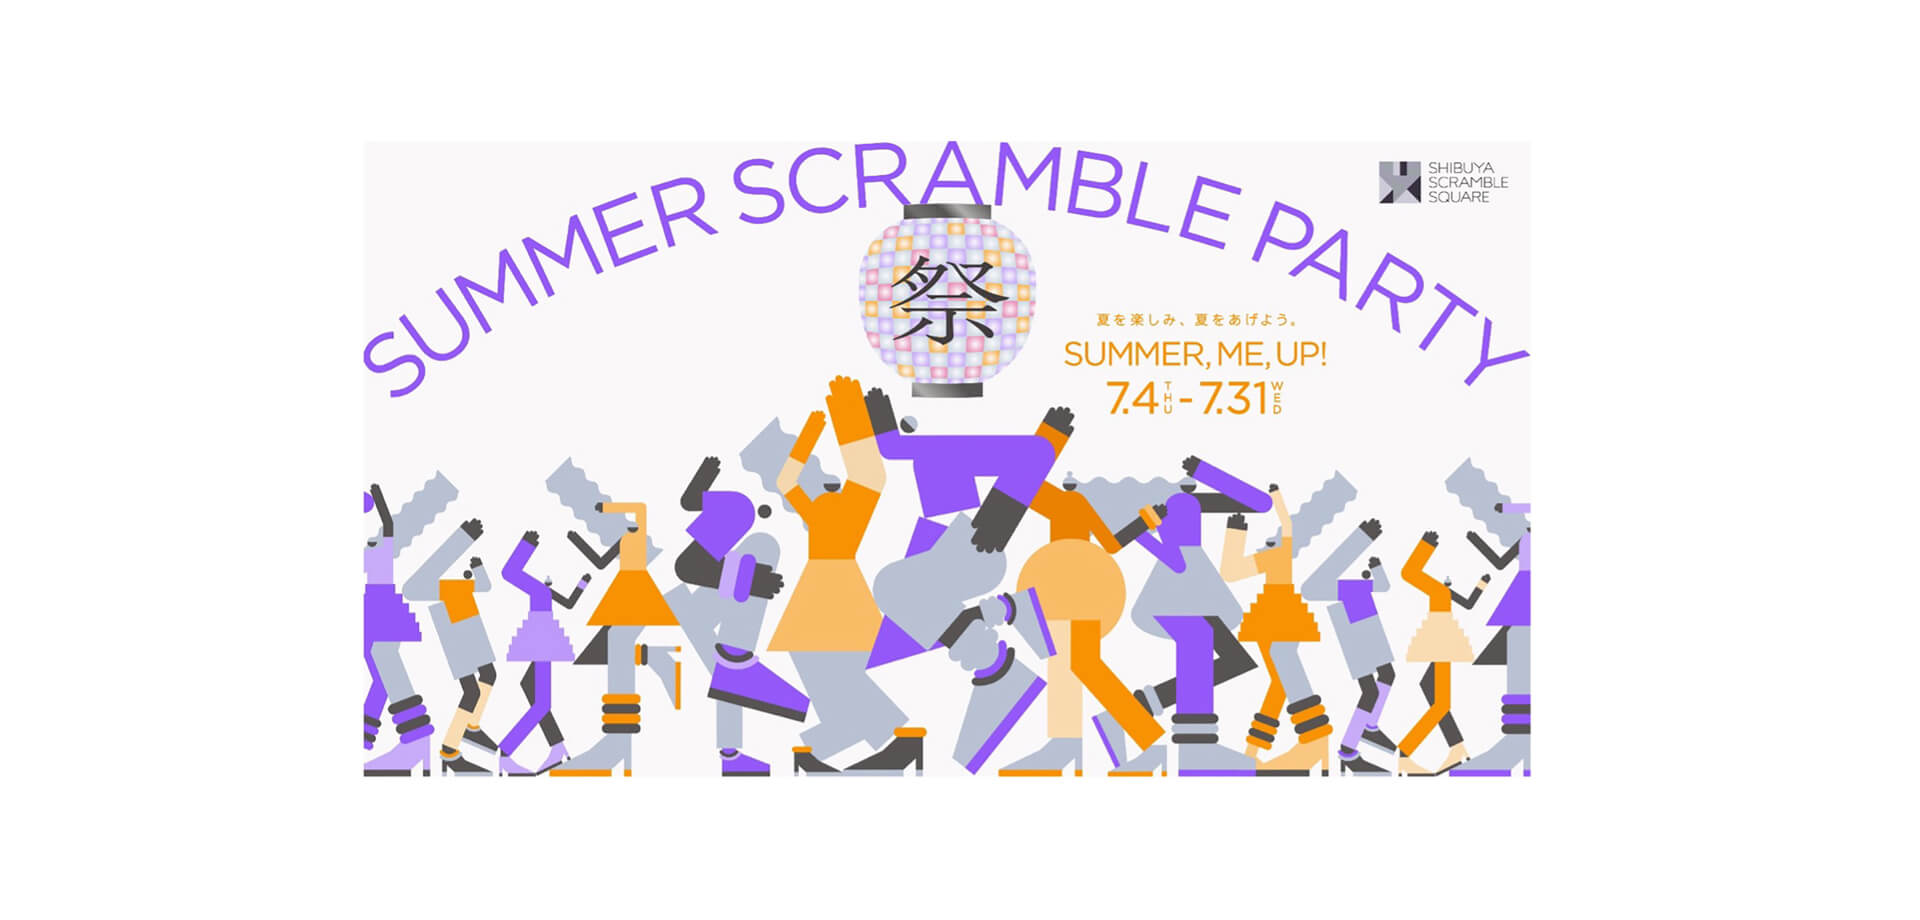 渋谷スクランブルスクエア「SUMMER SCRAMBLE PARTY」 バナー